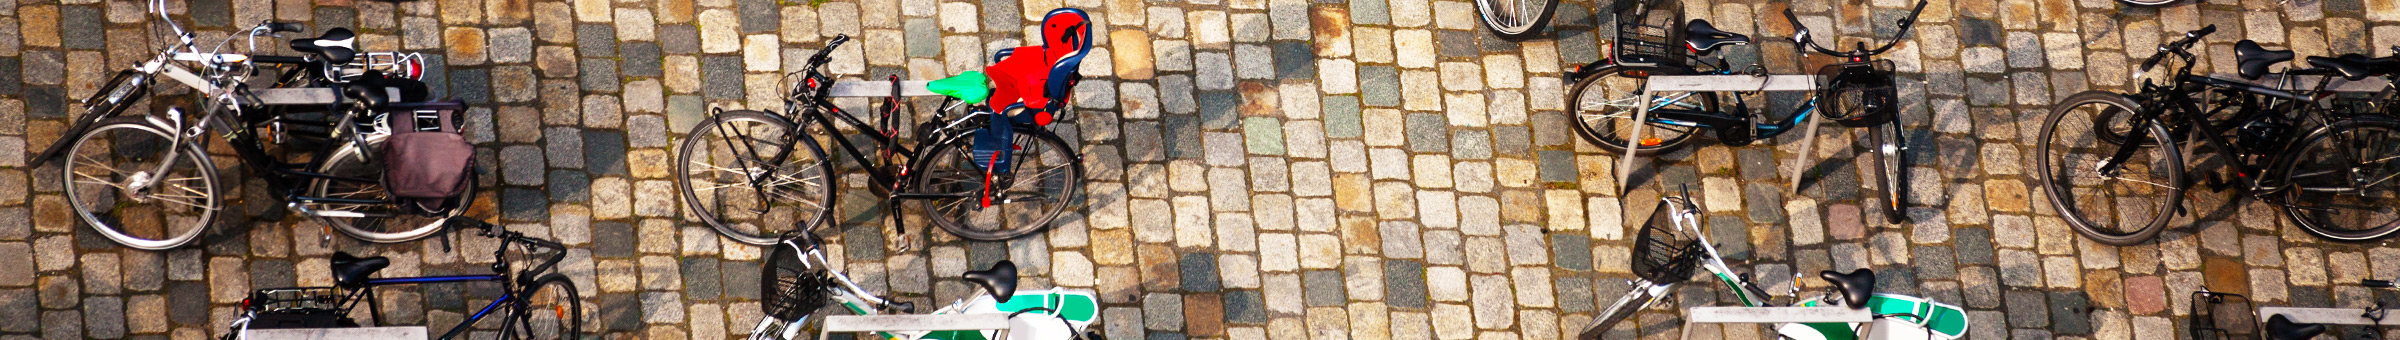 Eine Vielzahl an Rädern ist an fest installierten Fahrradbügeln in der Dresdner Innenstadt zu sehen.